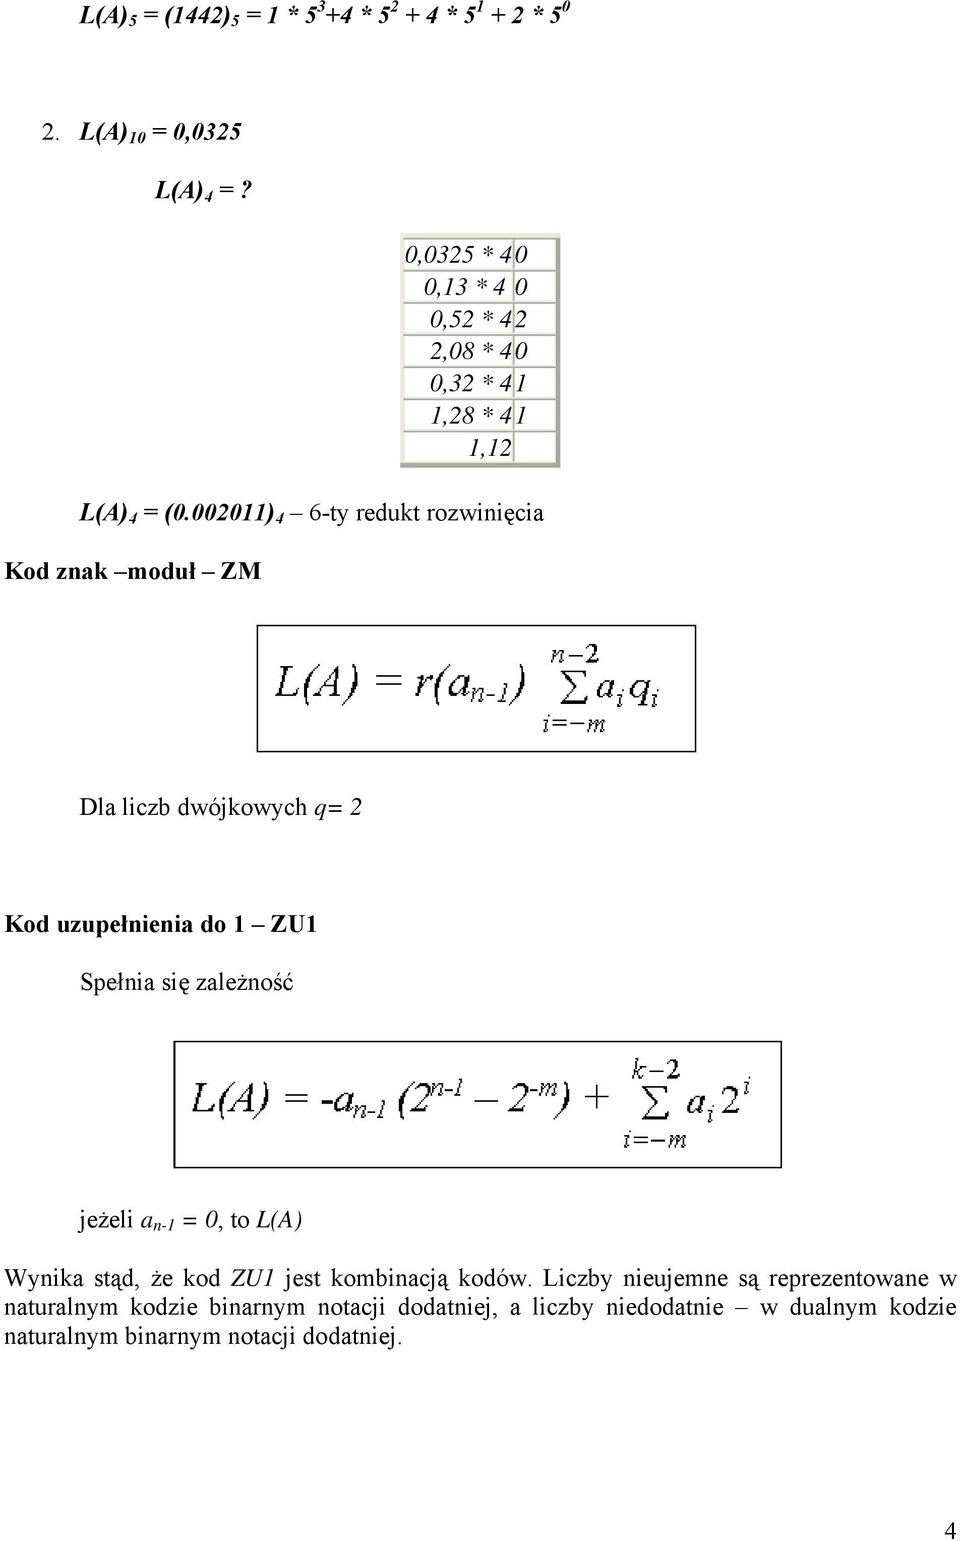 002011) 4 6-ty redukt rozwinięcia Kod znak moduł ZM Dla liczb dwójkowych q= 2 Kod uzupełnienia do 1 ZU1 Spełnia się zależność